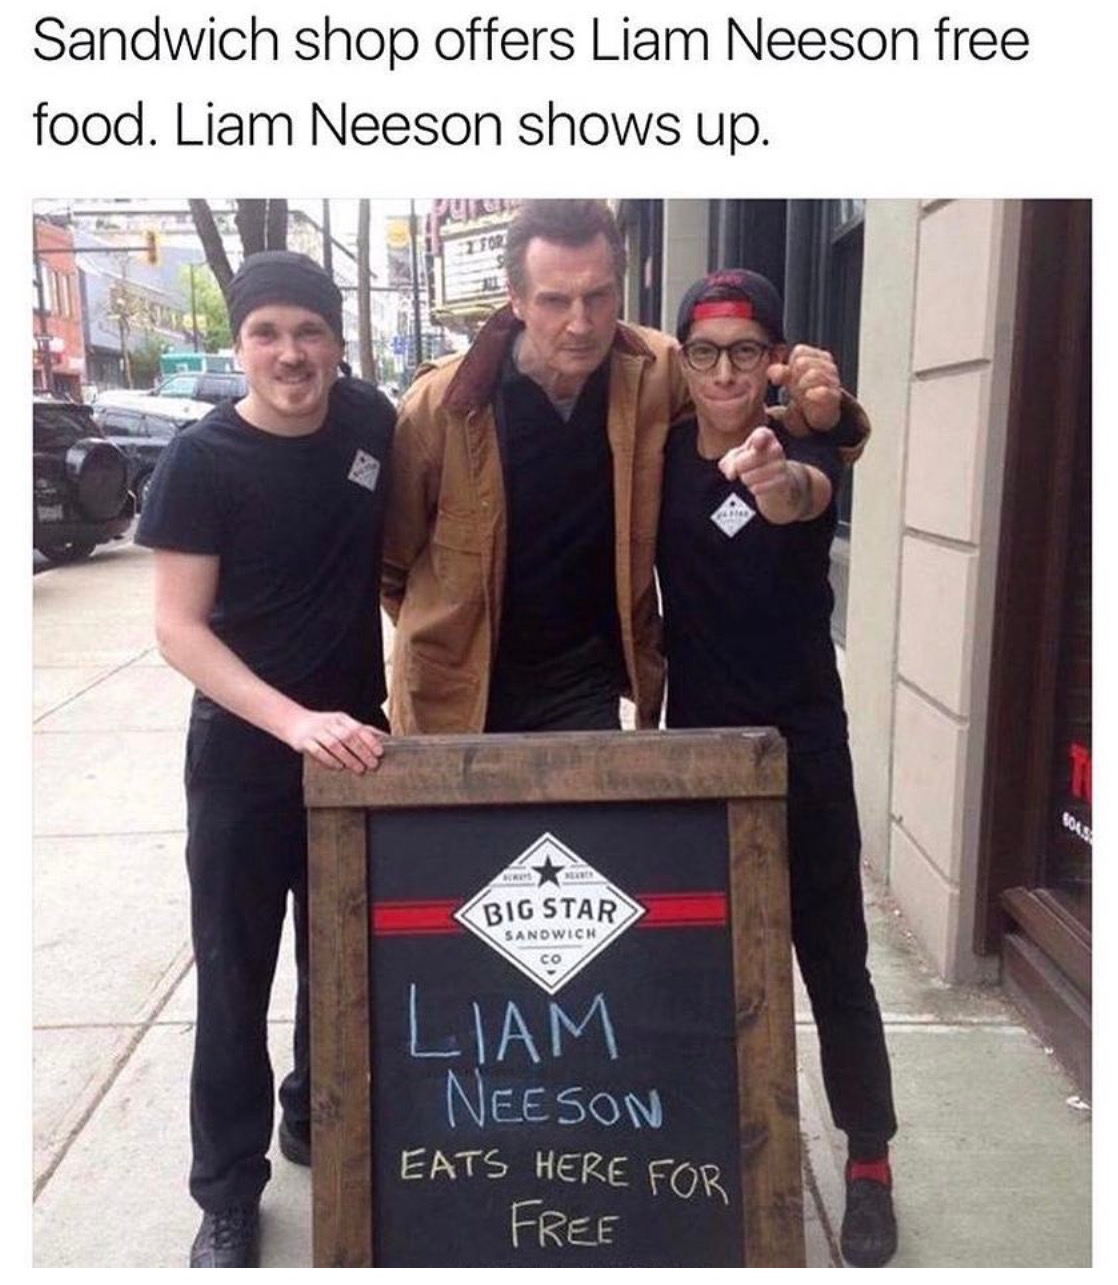 meme - liam neeson sandwich shop - Sandwich shop offers Liam Neeson free food. Liam Neeson shows up.